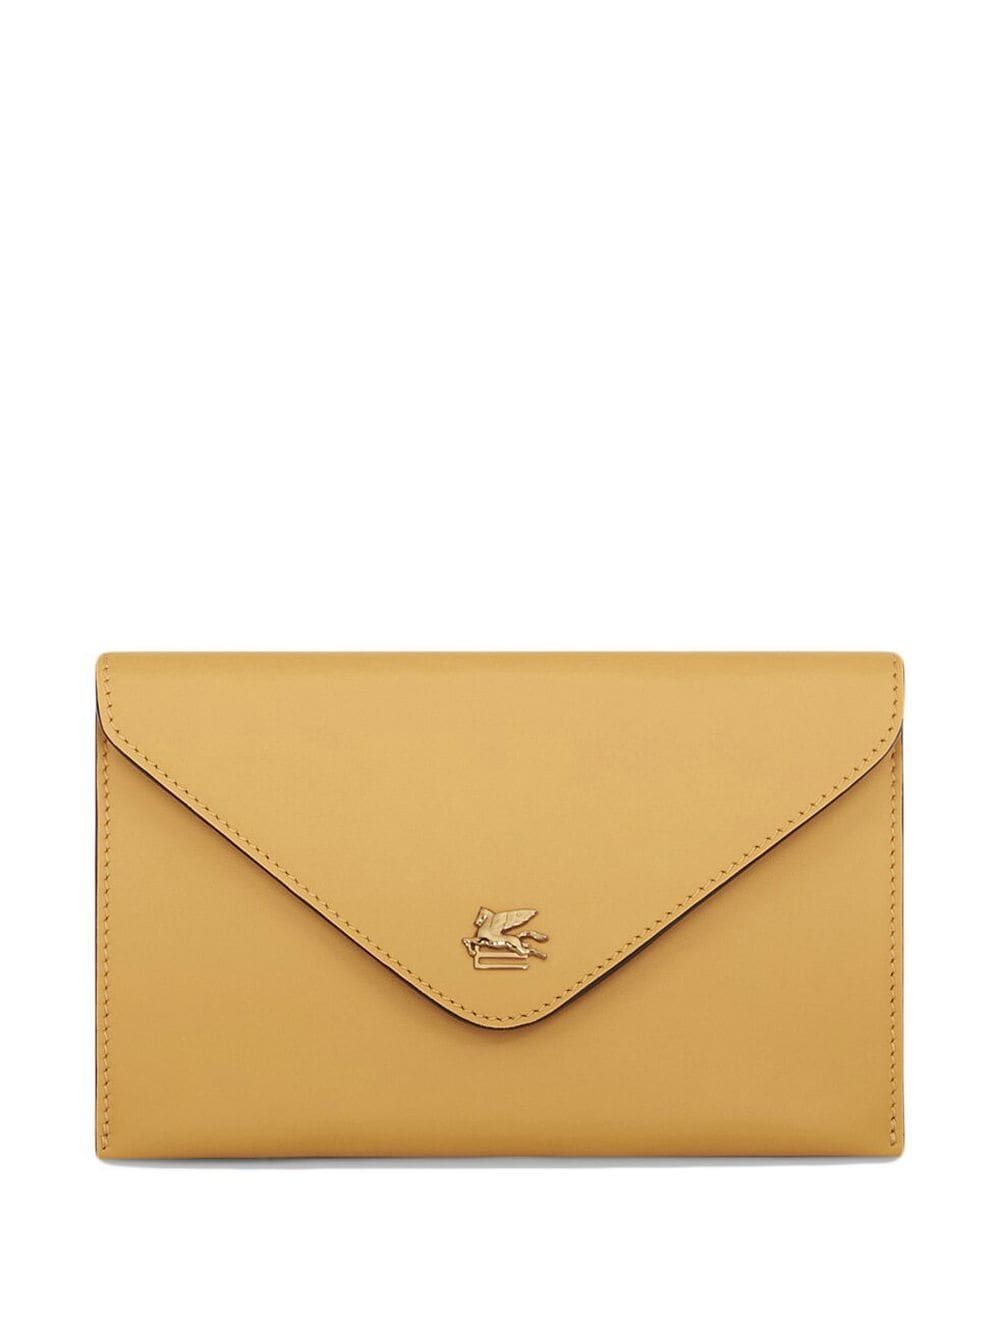 ETRO leather envelope purse - Yellow von ETRO